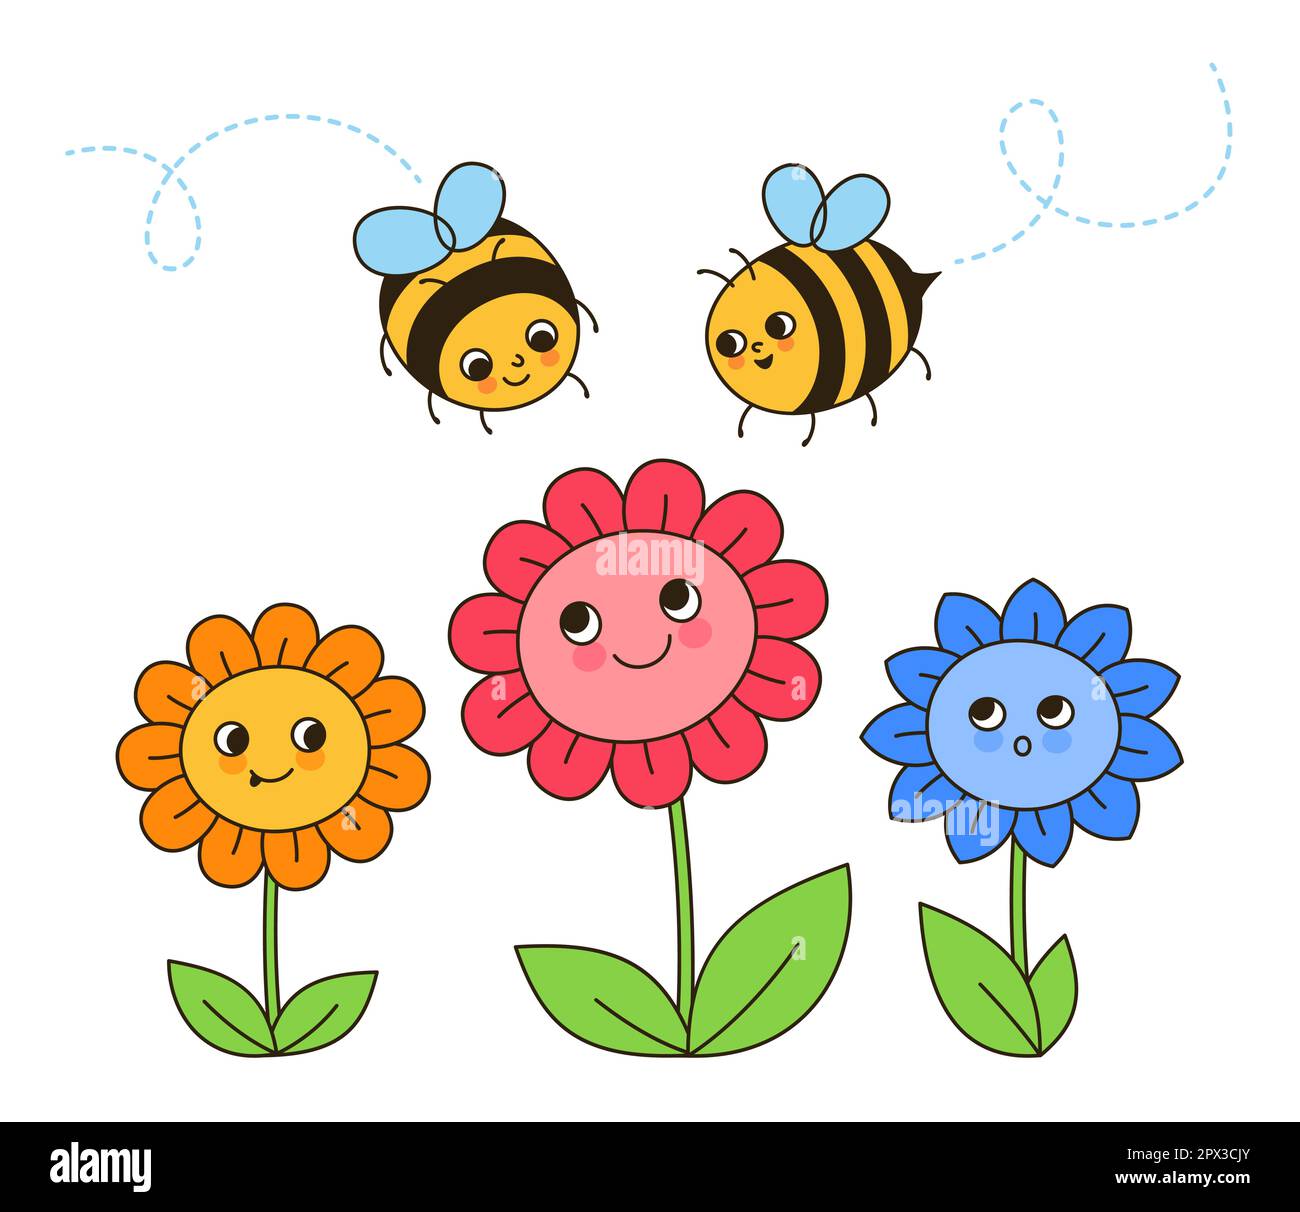 Illustration de dessins animés rétro de fleurs et de personnages de miel d'abeille. Bandes dessinées enfants des insectes d'abeilles avec drôle de visage d'art. Mignon enfant dessiné à la main été comique smiley rayures abeilles Doodle design vecteur Illustration de Vecteur